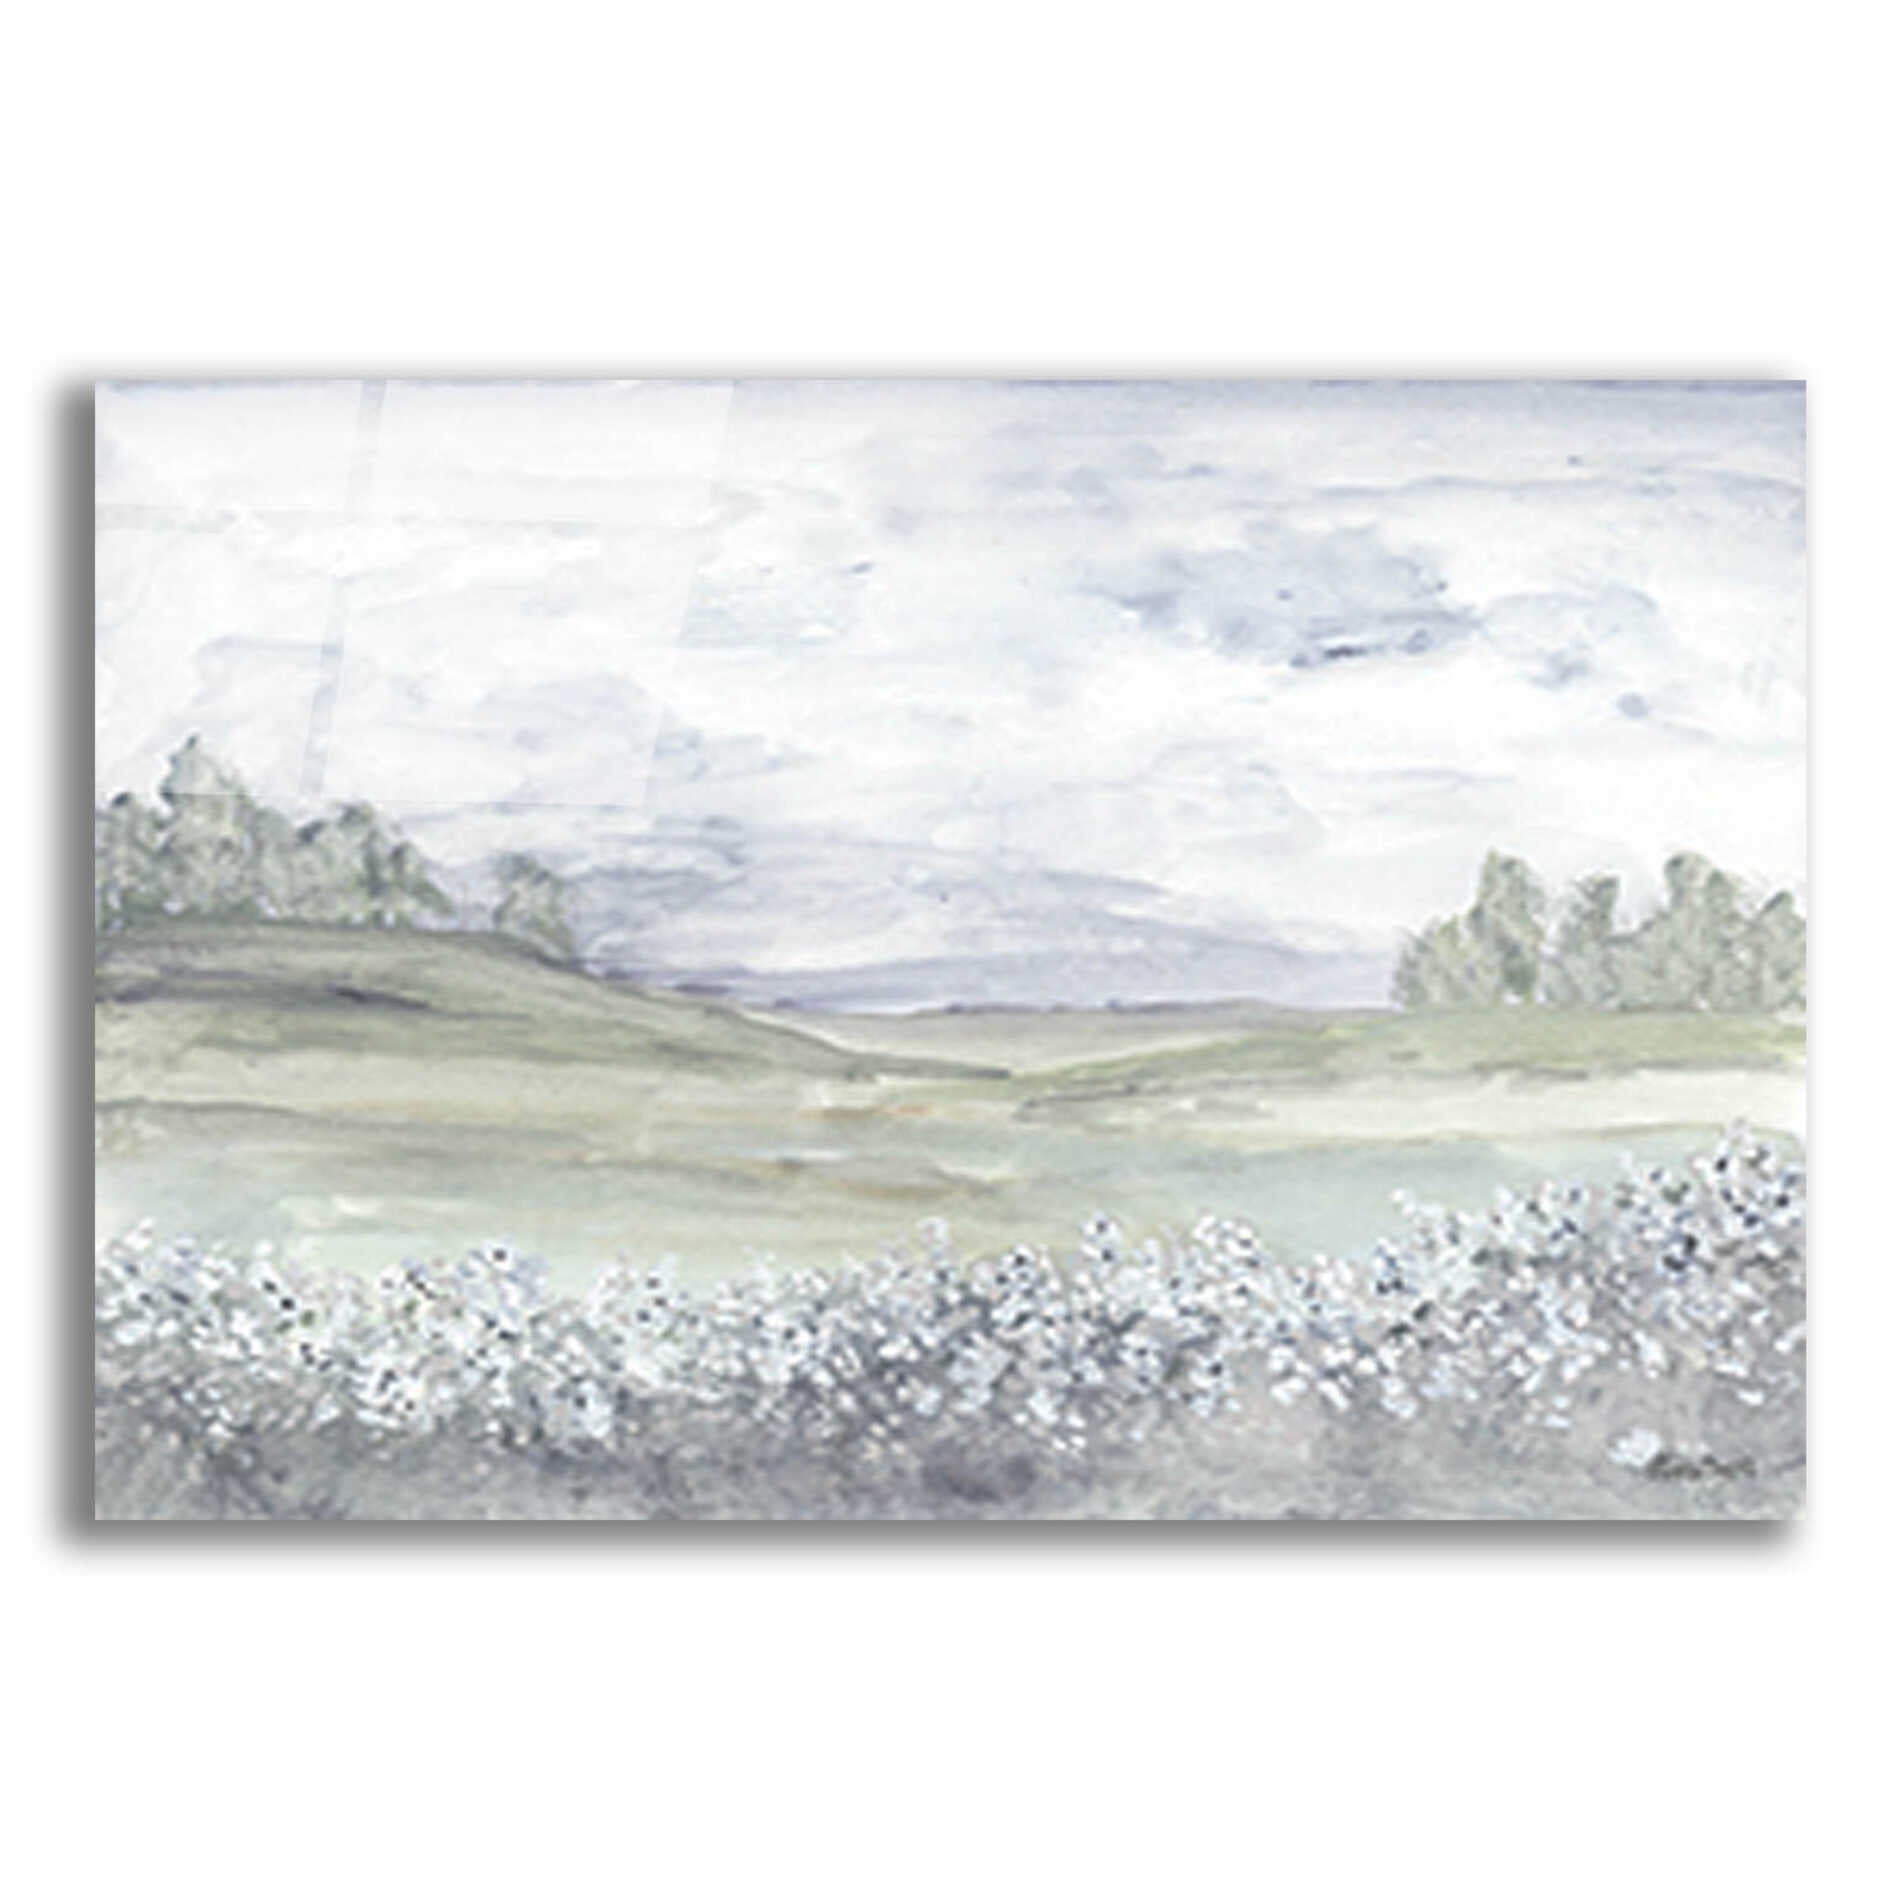 Epic Art 'Meadow' by Roey Ebert, Acrylic Glass Wall Art,16x12